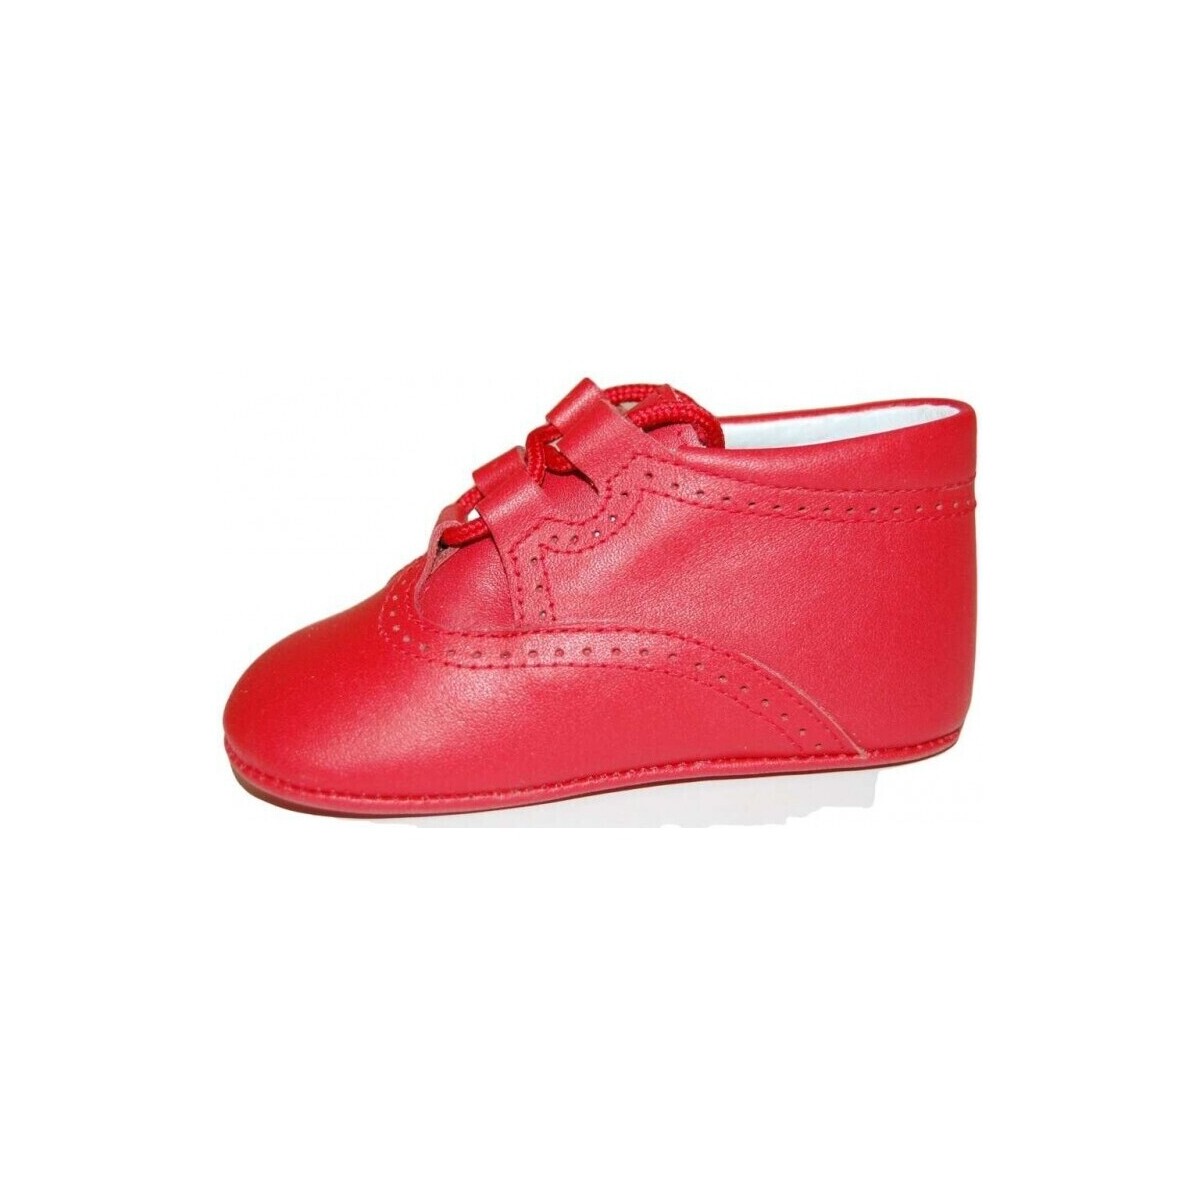 Παπούτσια Αγόρι Σοσονάκια μωρού Colores 15951-15 Red